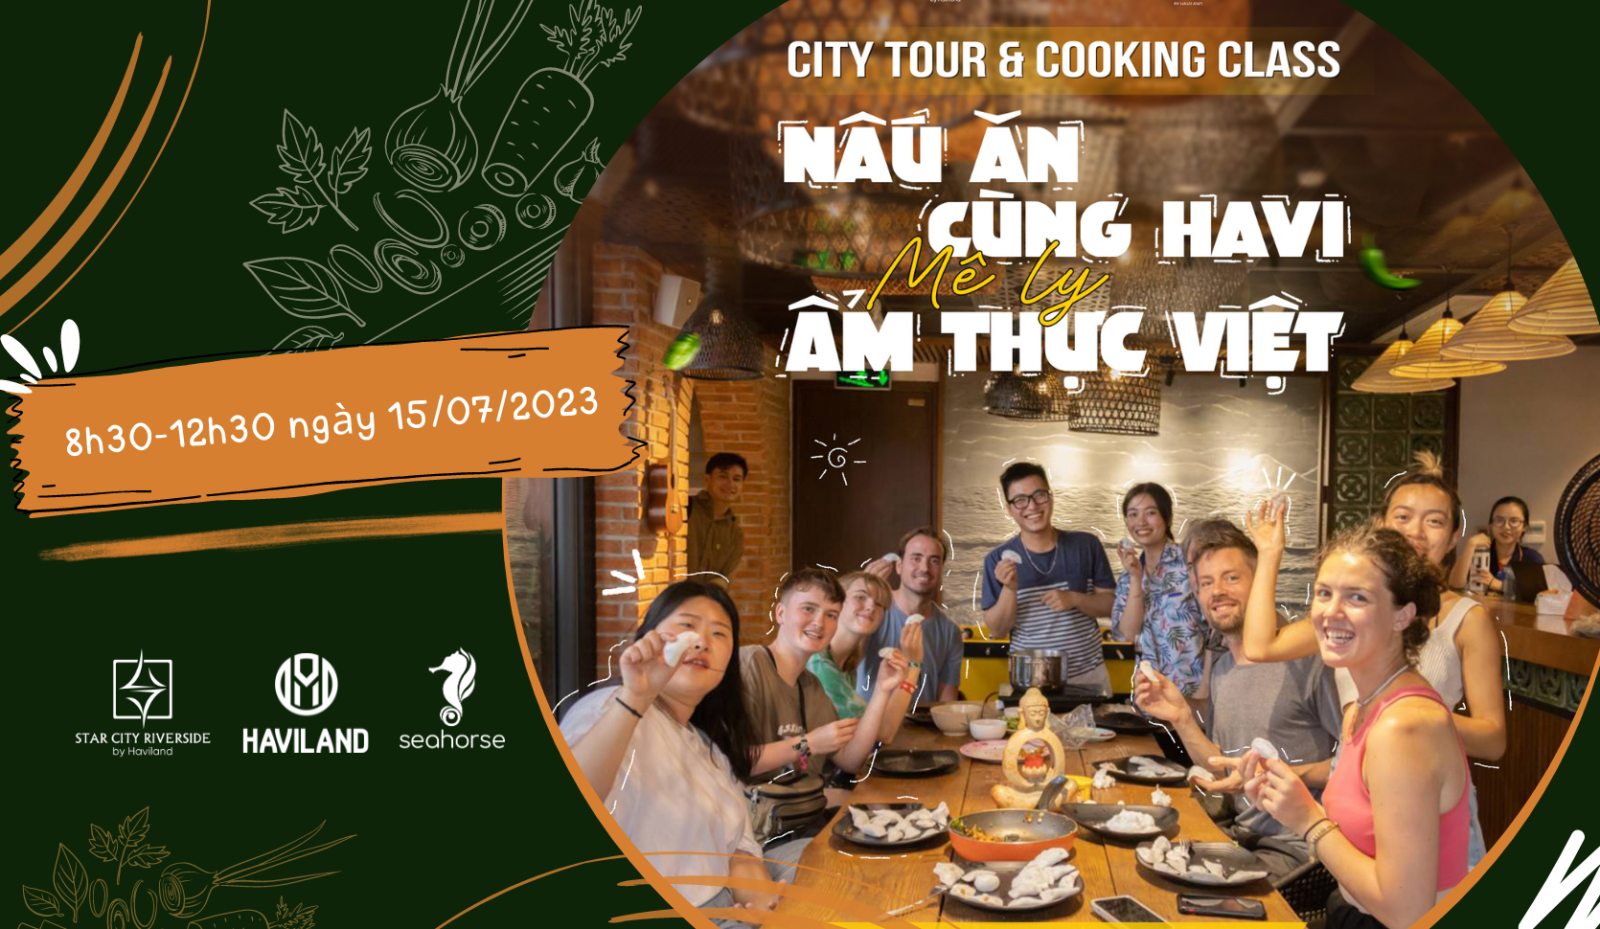 CITY TOUR & COOKING CLASS NẤU ĂN CÙNG HAVI - MÊ LY ẨM THỰC VIỆT